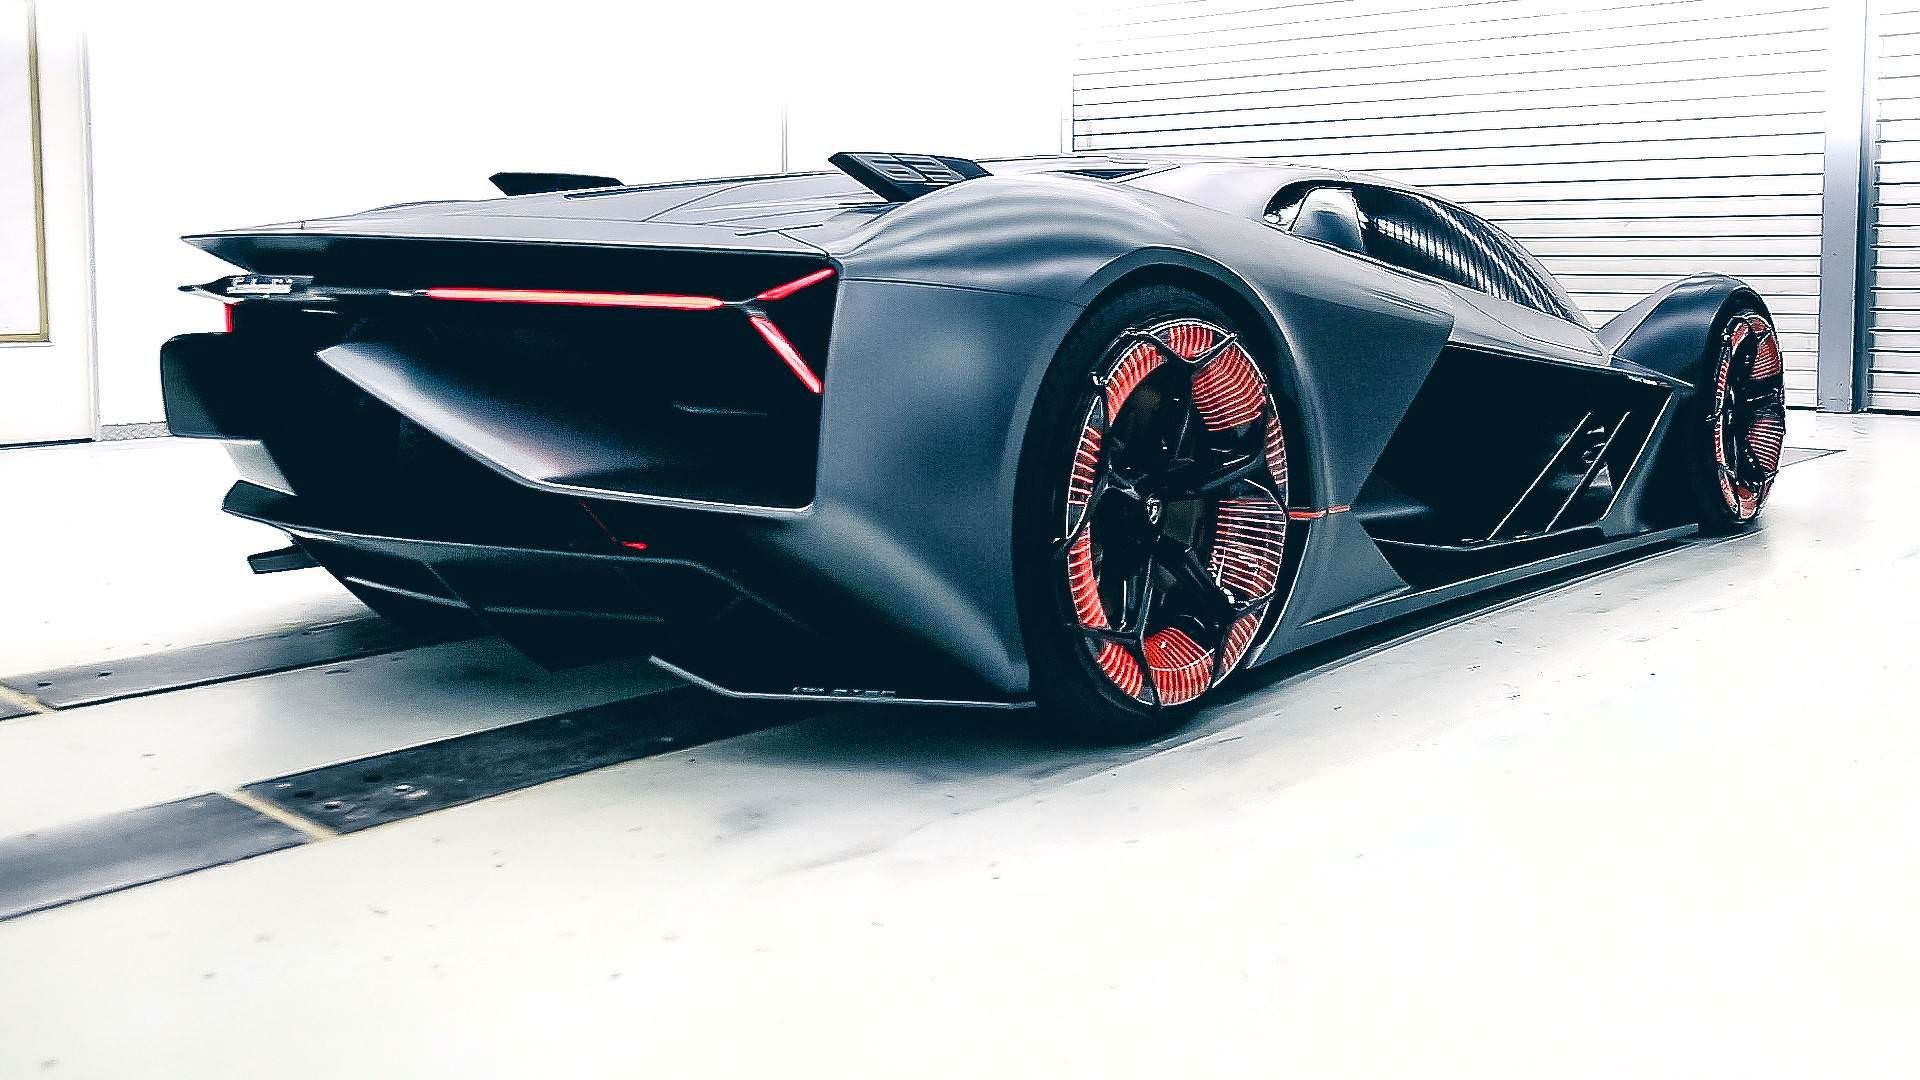 مرجع متخصصين ايران Lamborghini Terzo Millennio Concept / مفهومي لامبورگيني ترزو ميلنيو